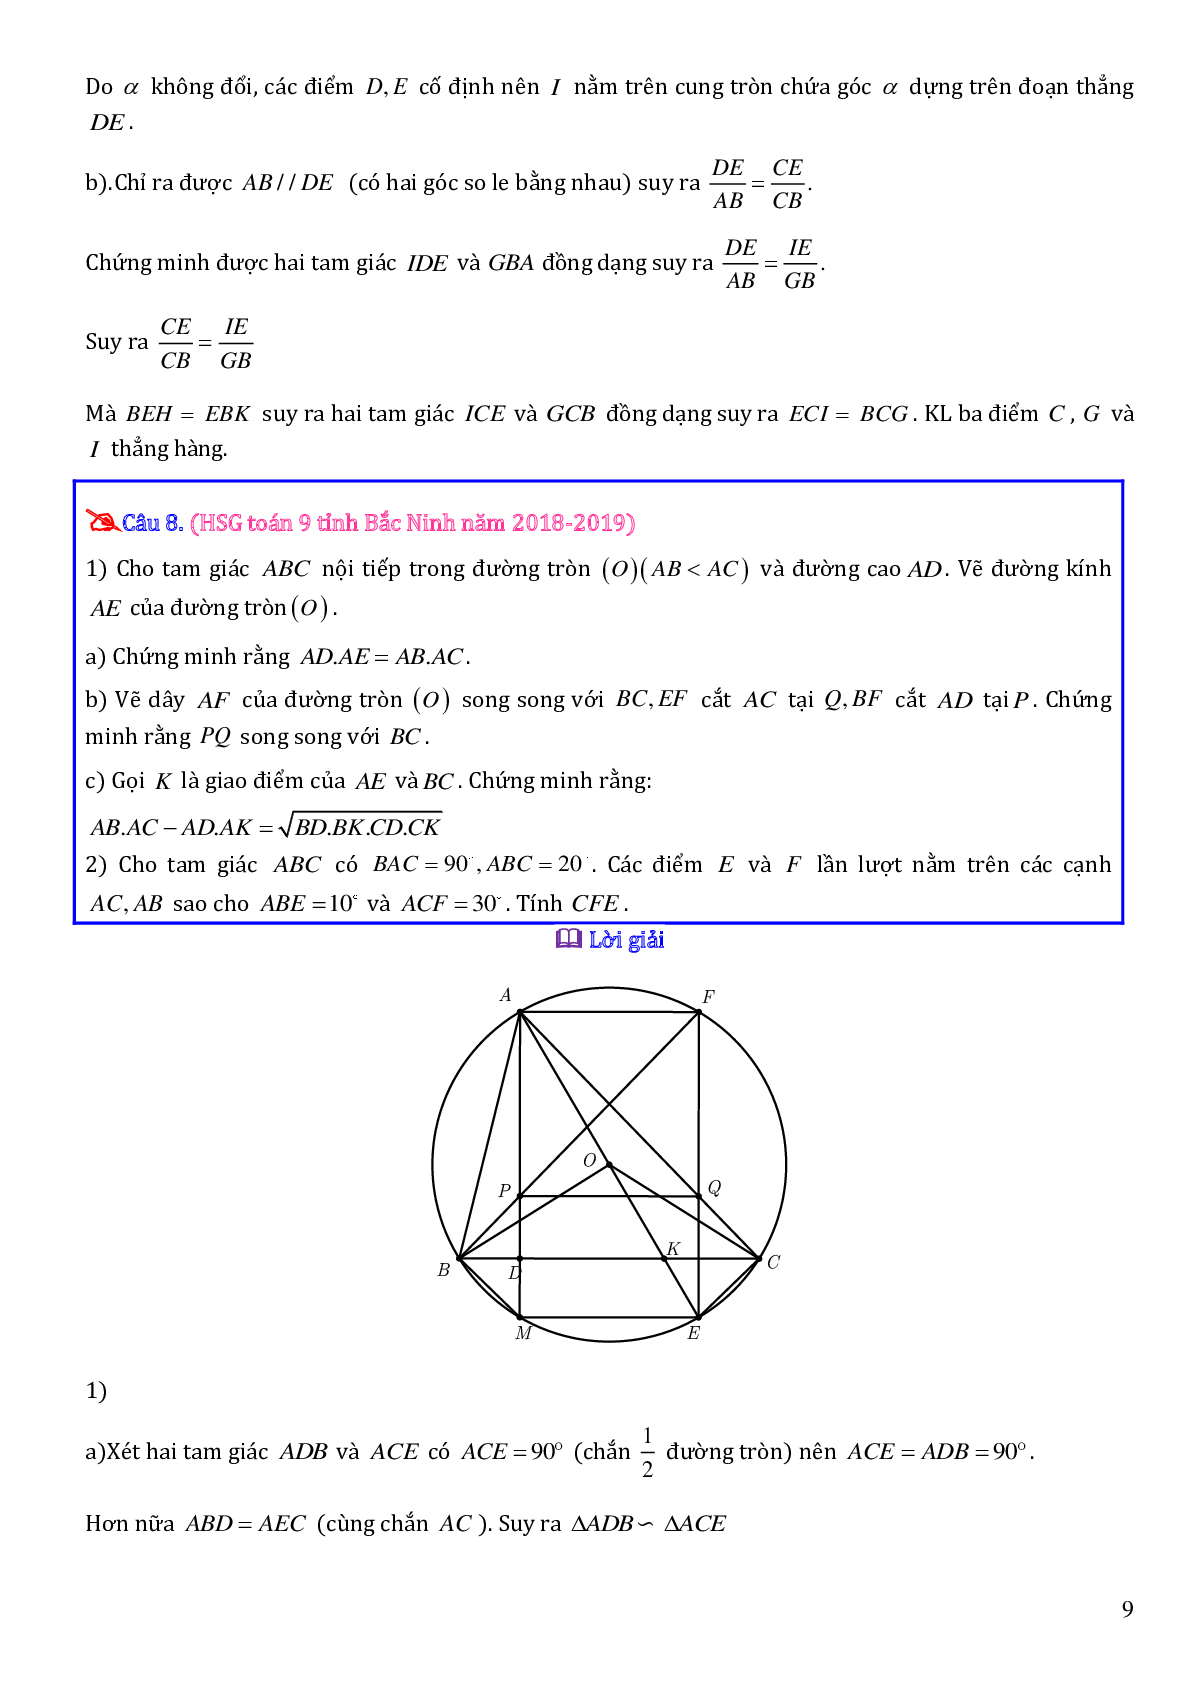 Các bài toán hình học trong đề thi học sinh giỏi toán lớp 9 (trang 9)